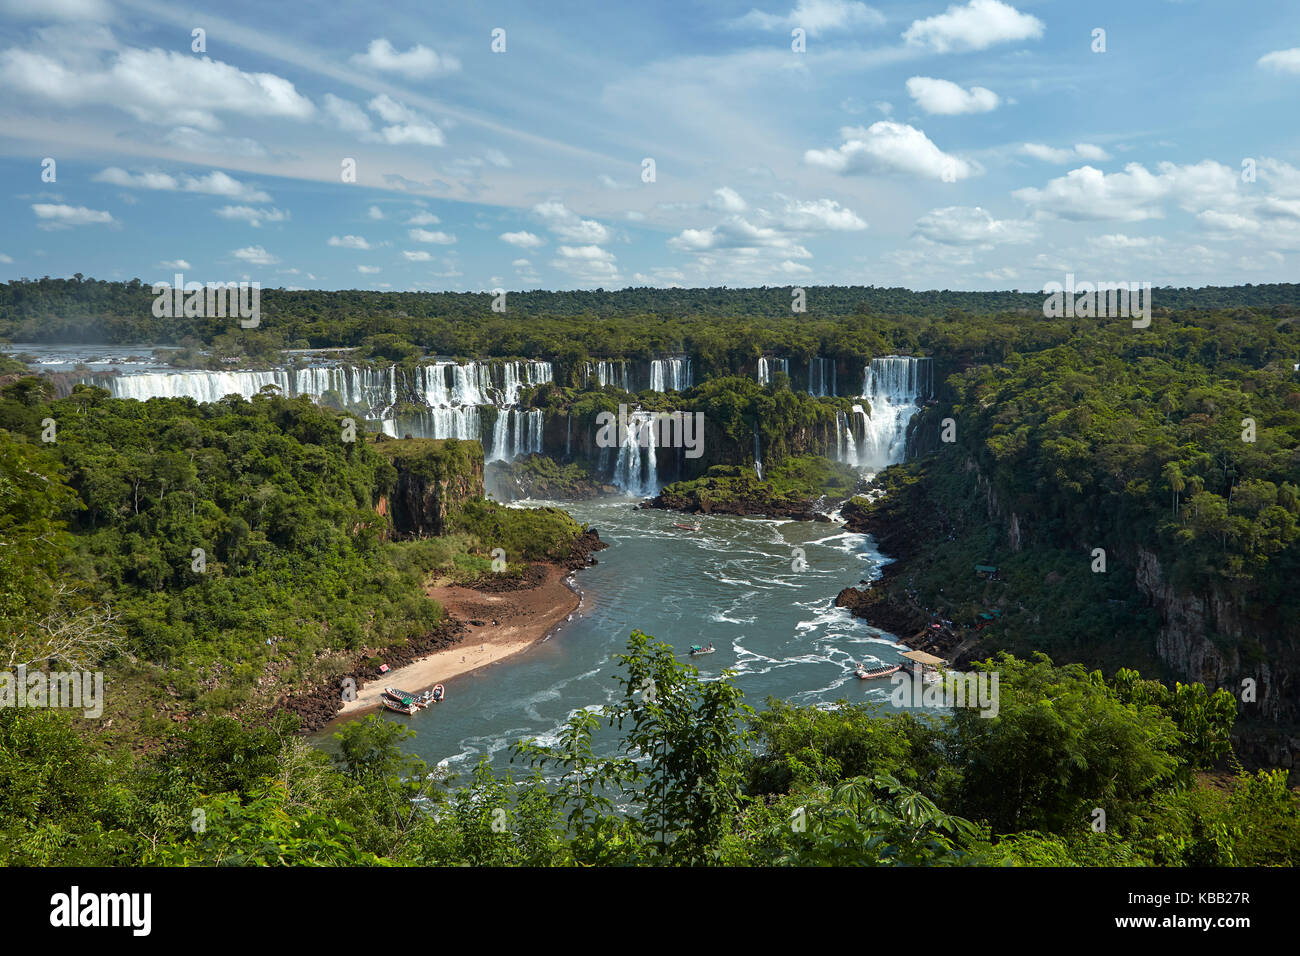 Chutes d'Iguazu côté Argentine, et bateaux touristiques sur la rivière Iguazu, Brésil - frontière Argentine, Amérique du Sud Banque D'Images